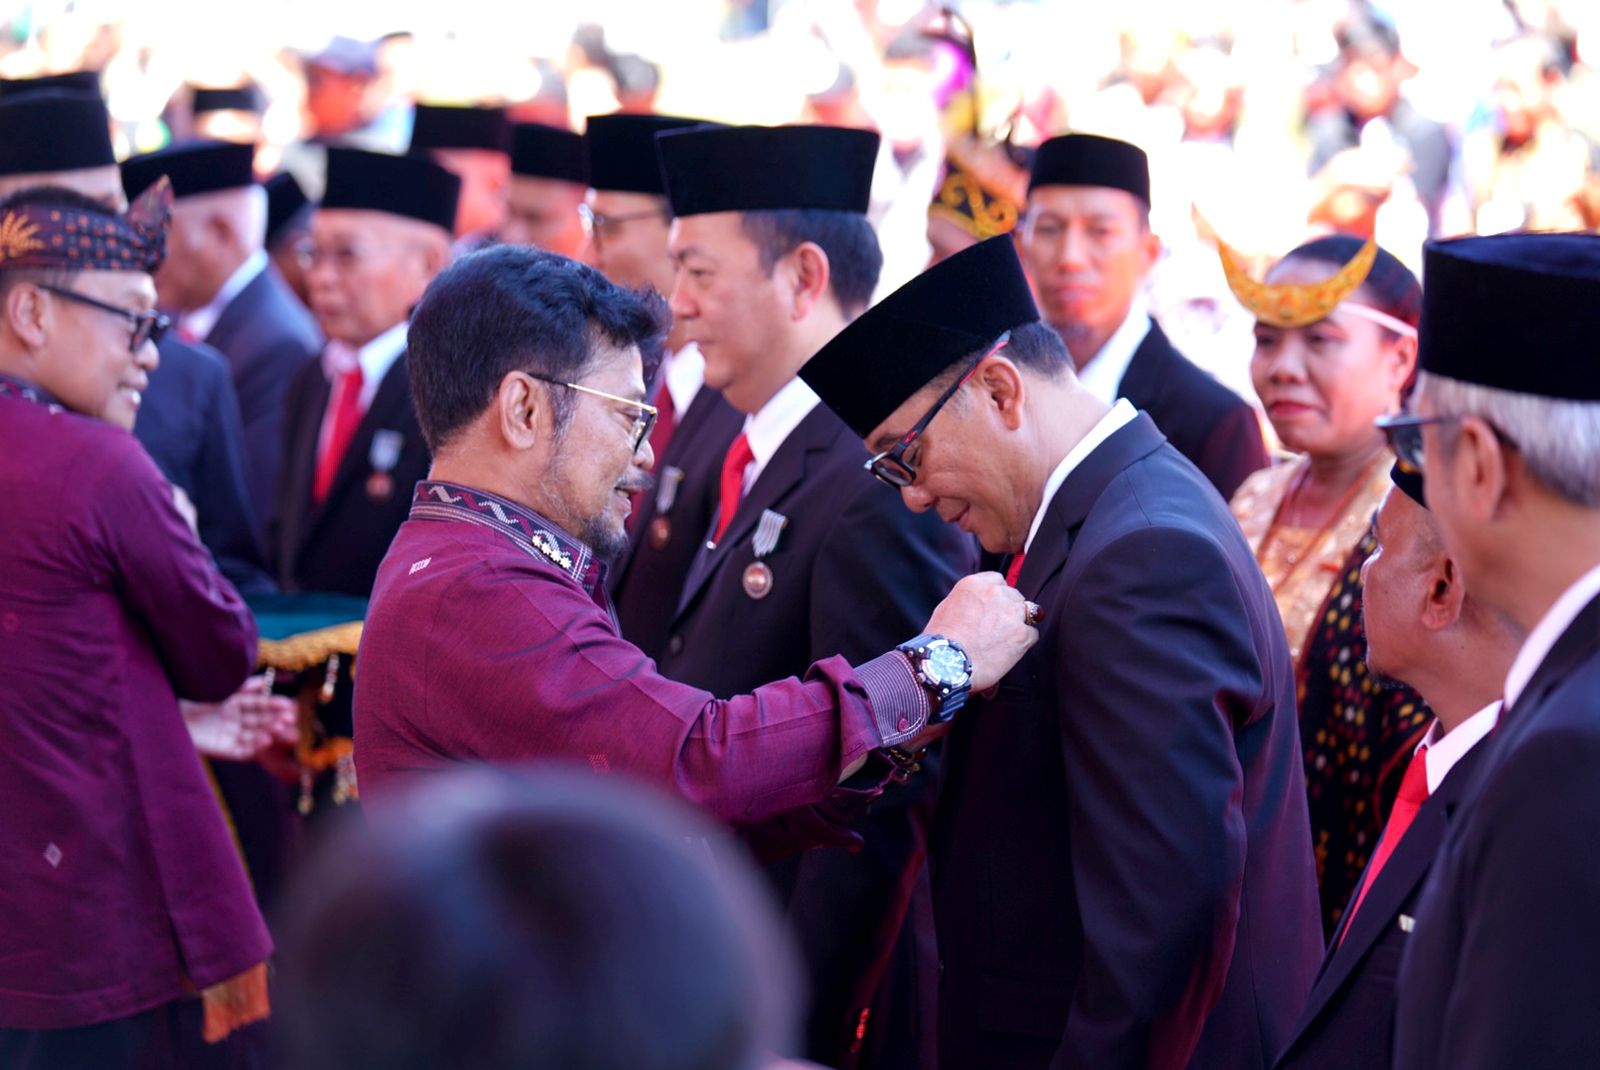 Plt Bupati Bogor Iwan Setiawan Raih Penghargaan Tanda Kehormatan Satyalancana Wira Karya dari Presiden